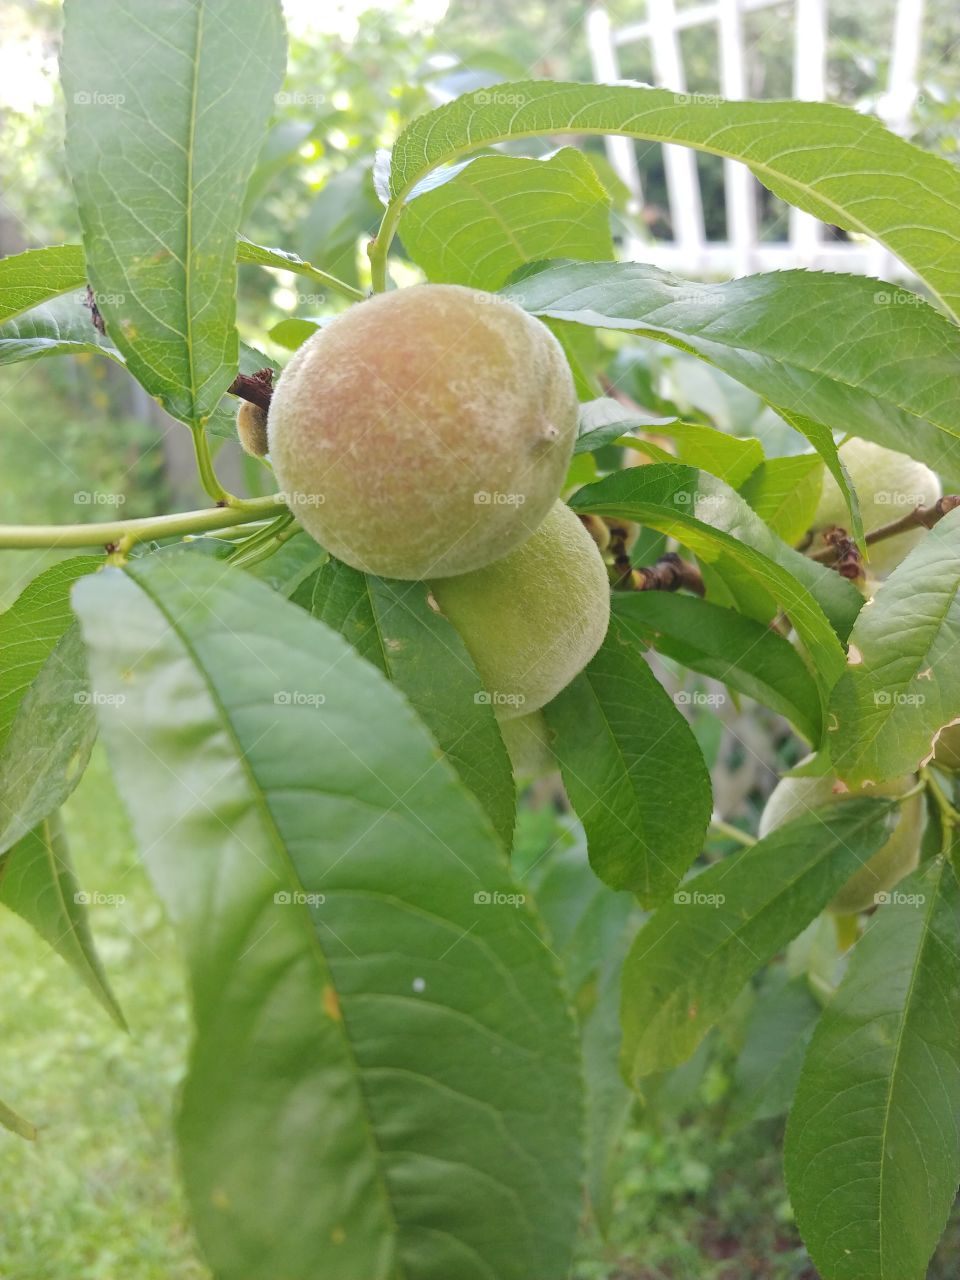 baby fuzzy little peach in this summers garden.